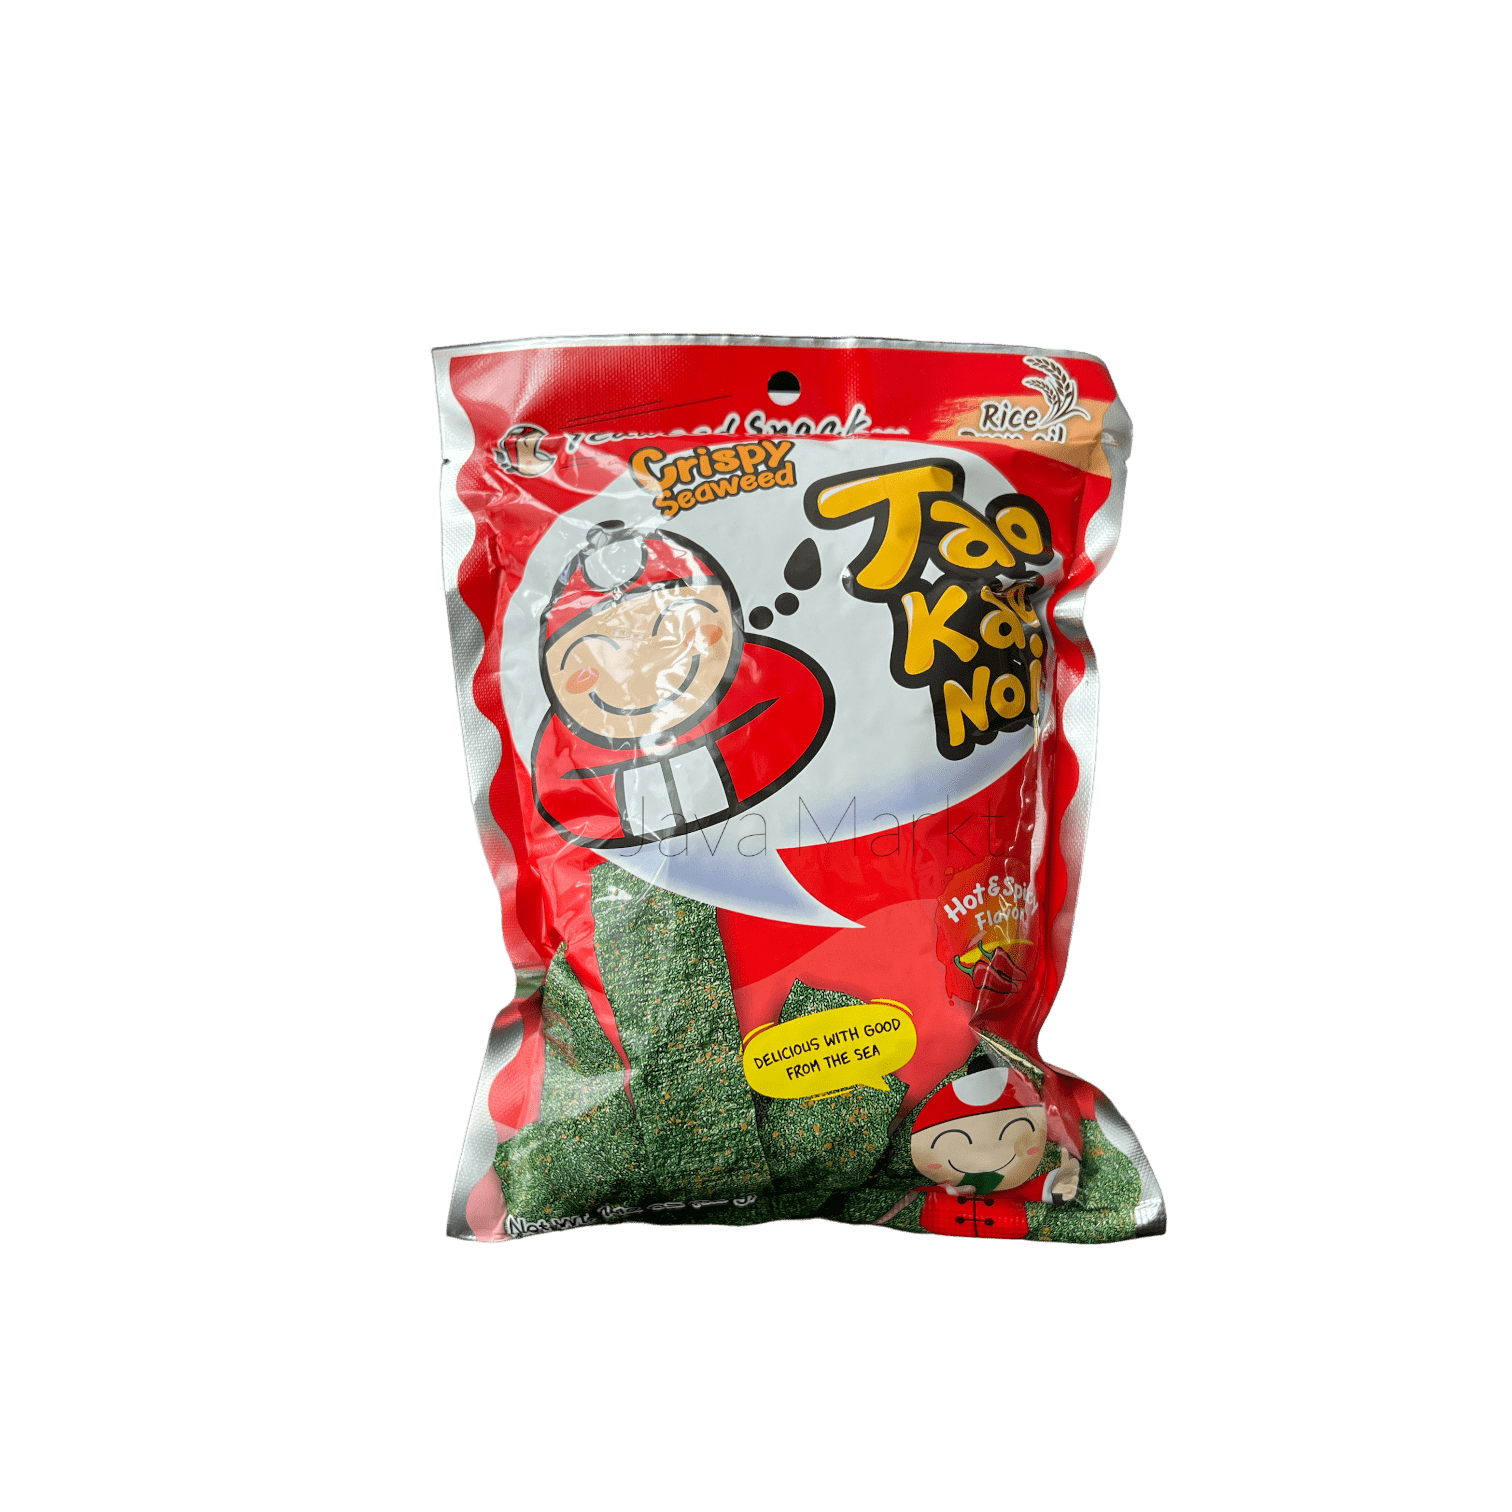 Taokaenoi Crispy Seaweed Hot & Spicy - Java Markt